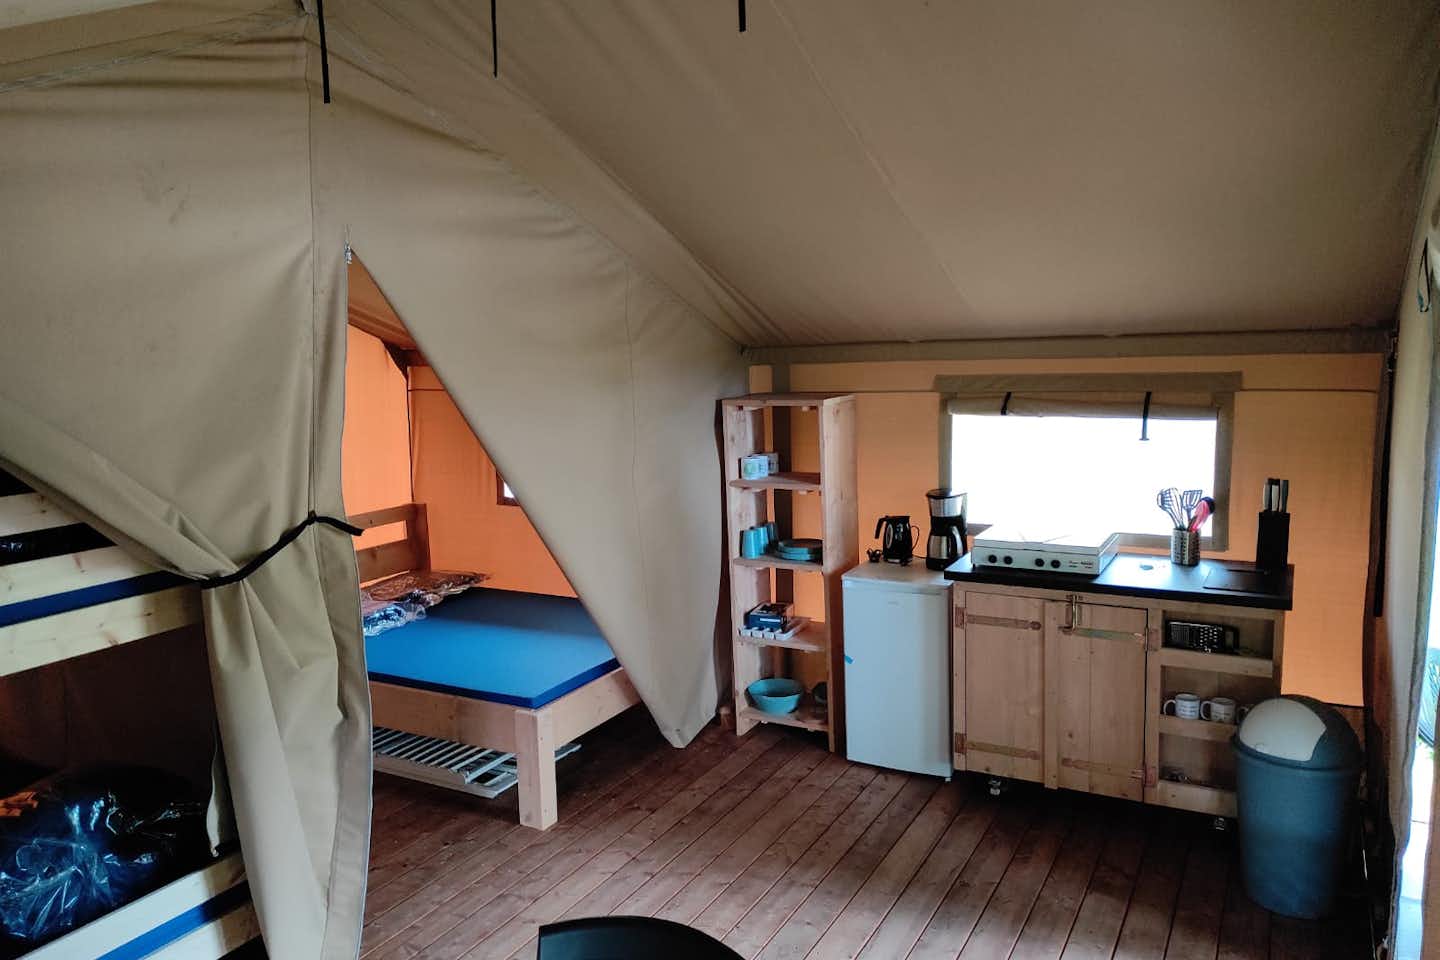 Vodatent @ Camping L' Etruyere - Blick in ein Mietzelt mit kleiner Küche 